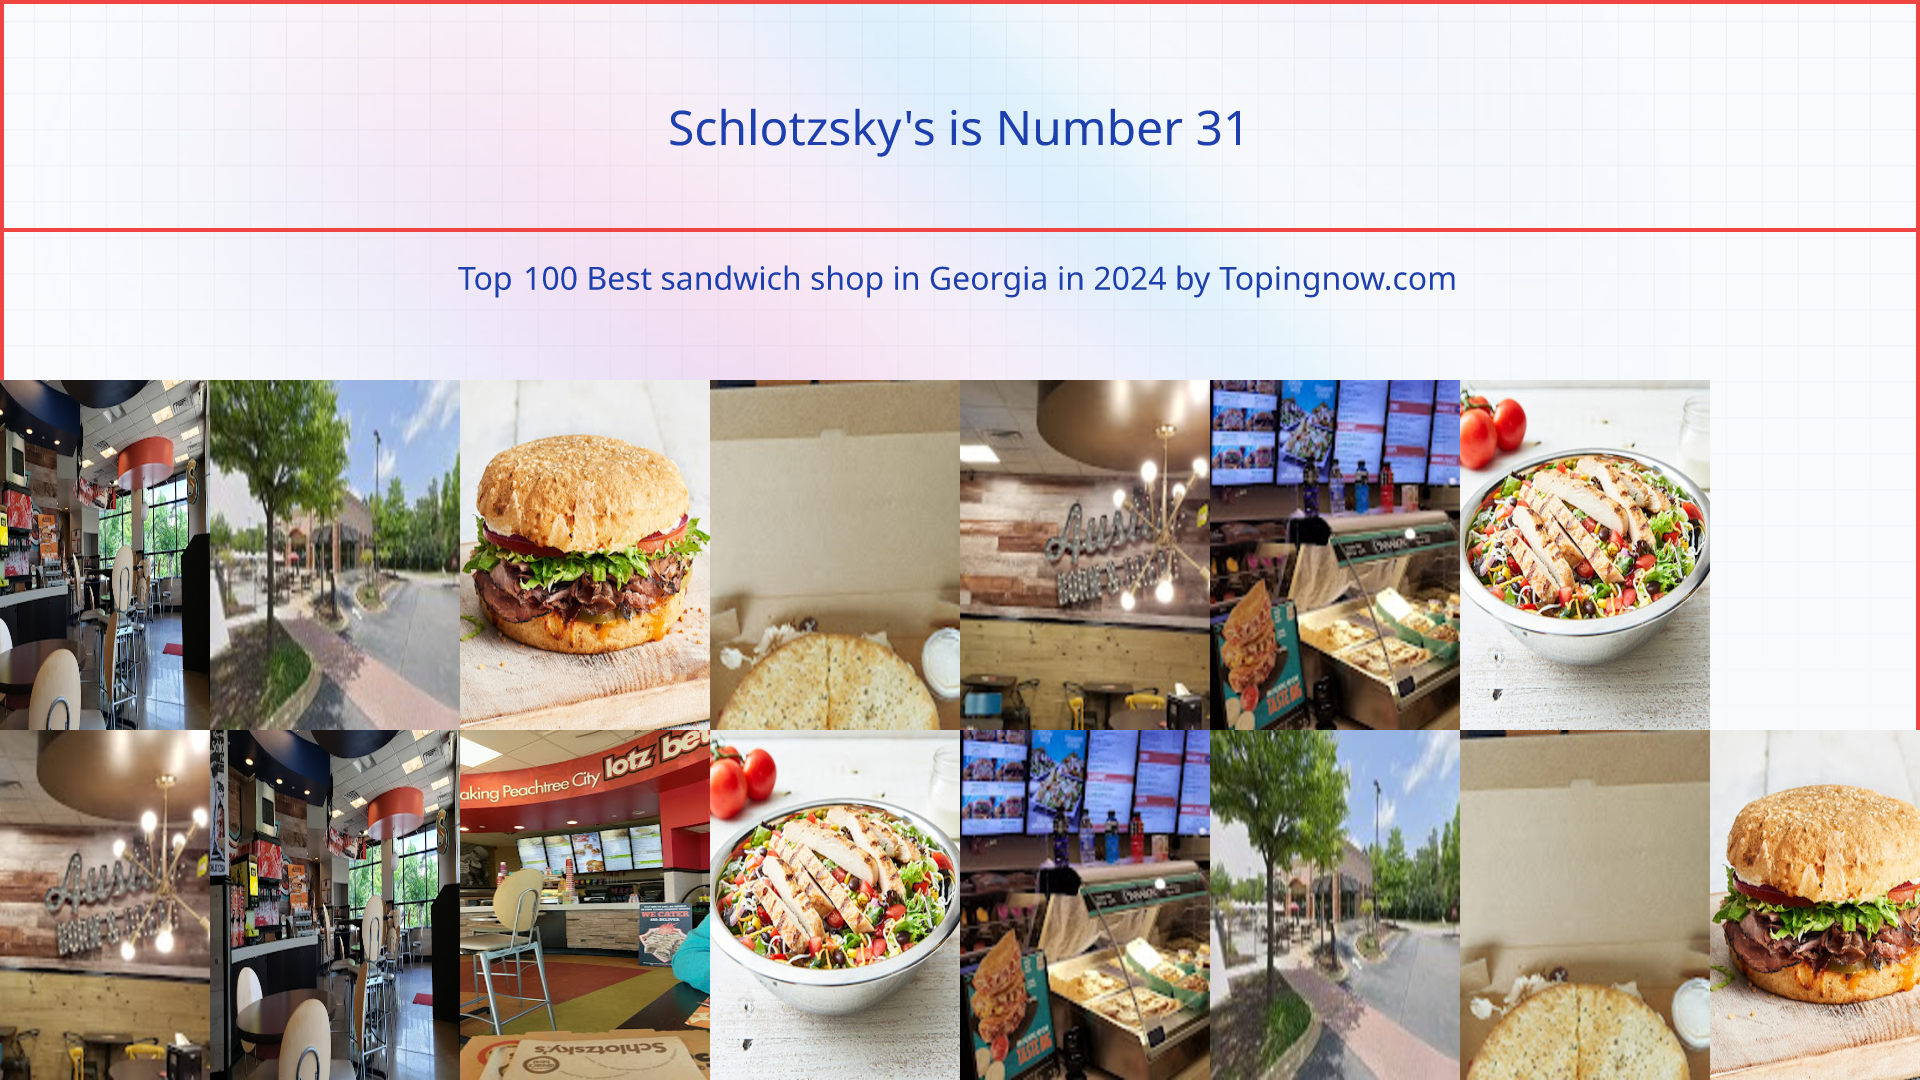 Schlotzsky's: Top 100 Best sandwich shop in Georgia in 2024